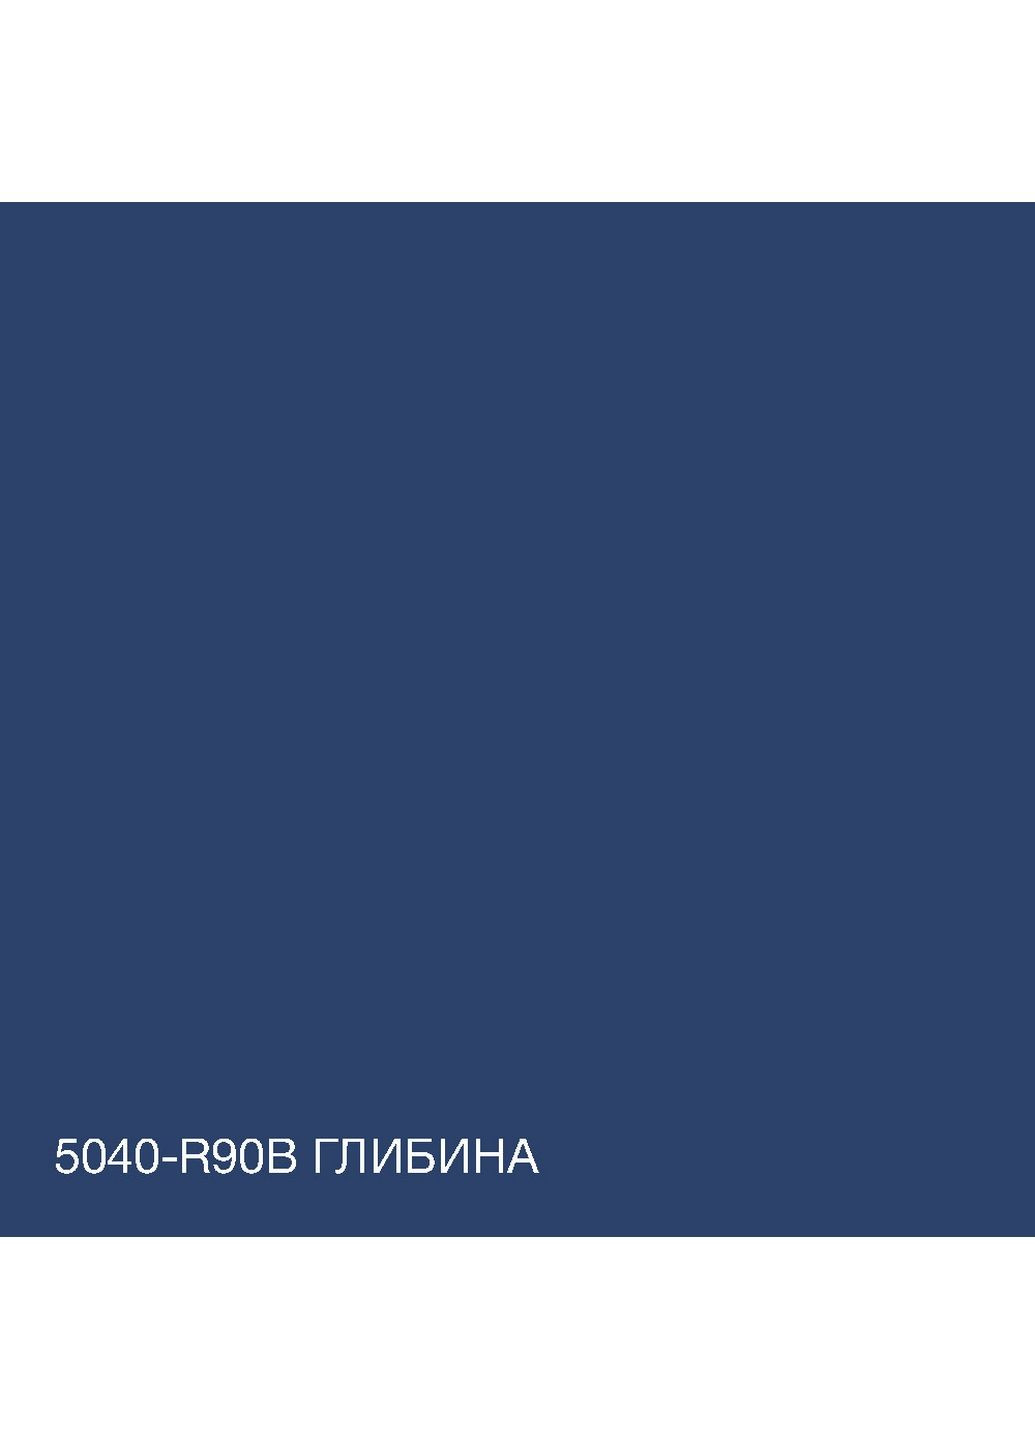 Краска Интерьерная Латексная 5040-R90B (C) Глубина 10л SkyLine (283327322)